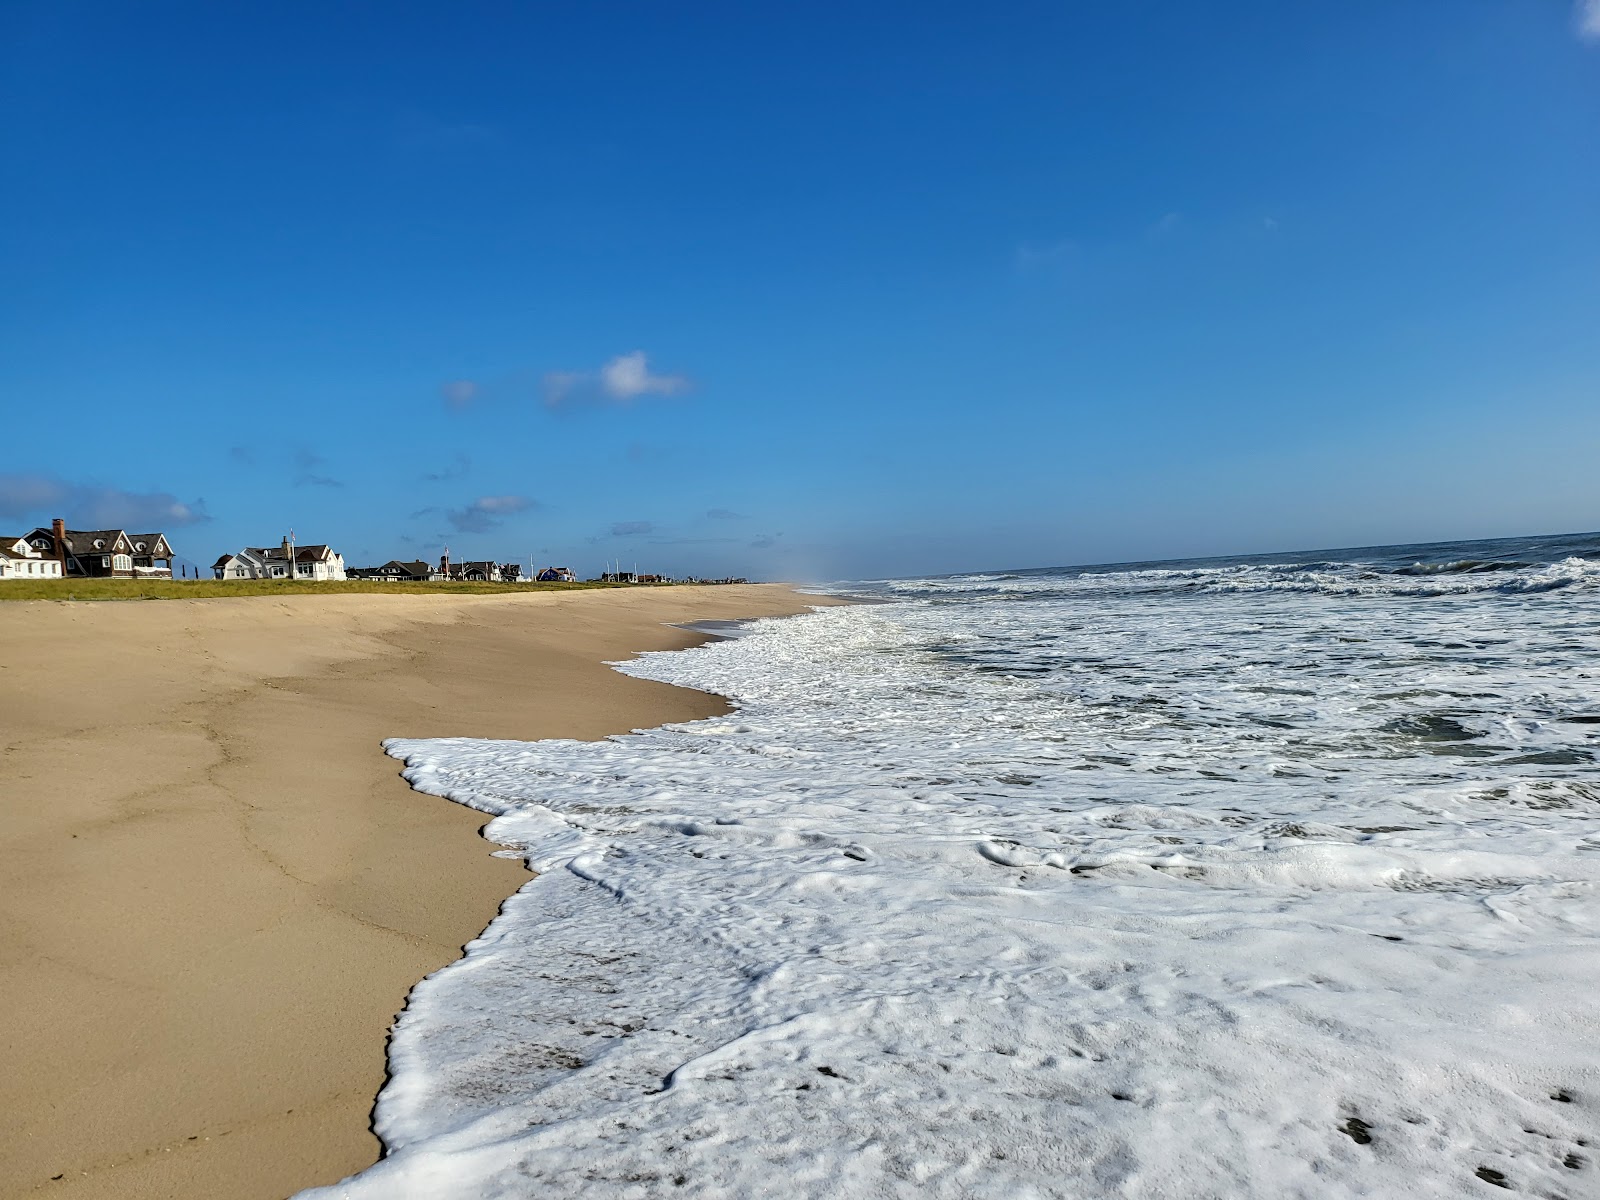 Zdjęcie Lyman Str. Beach z powierzchnią jasny piasek